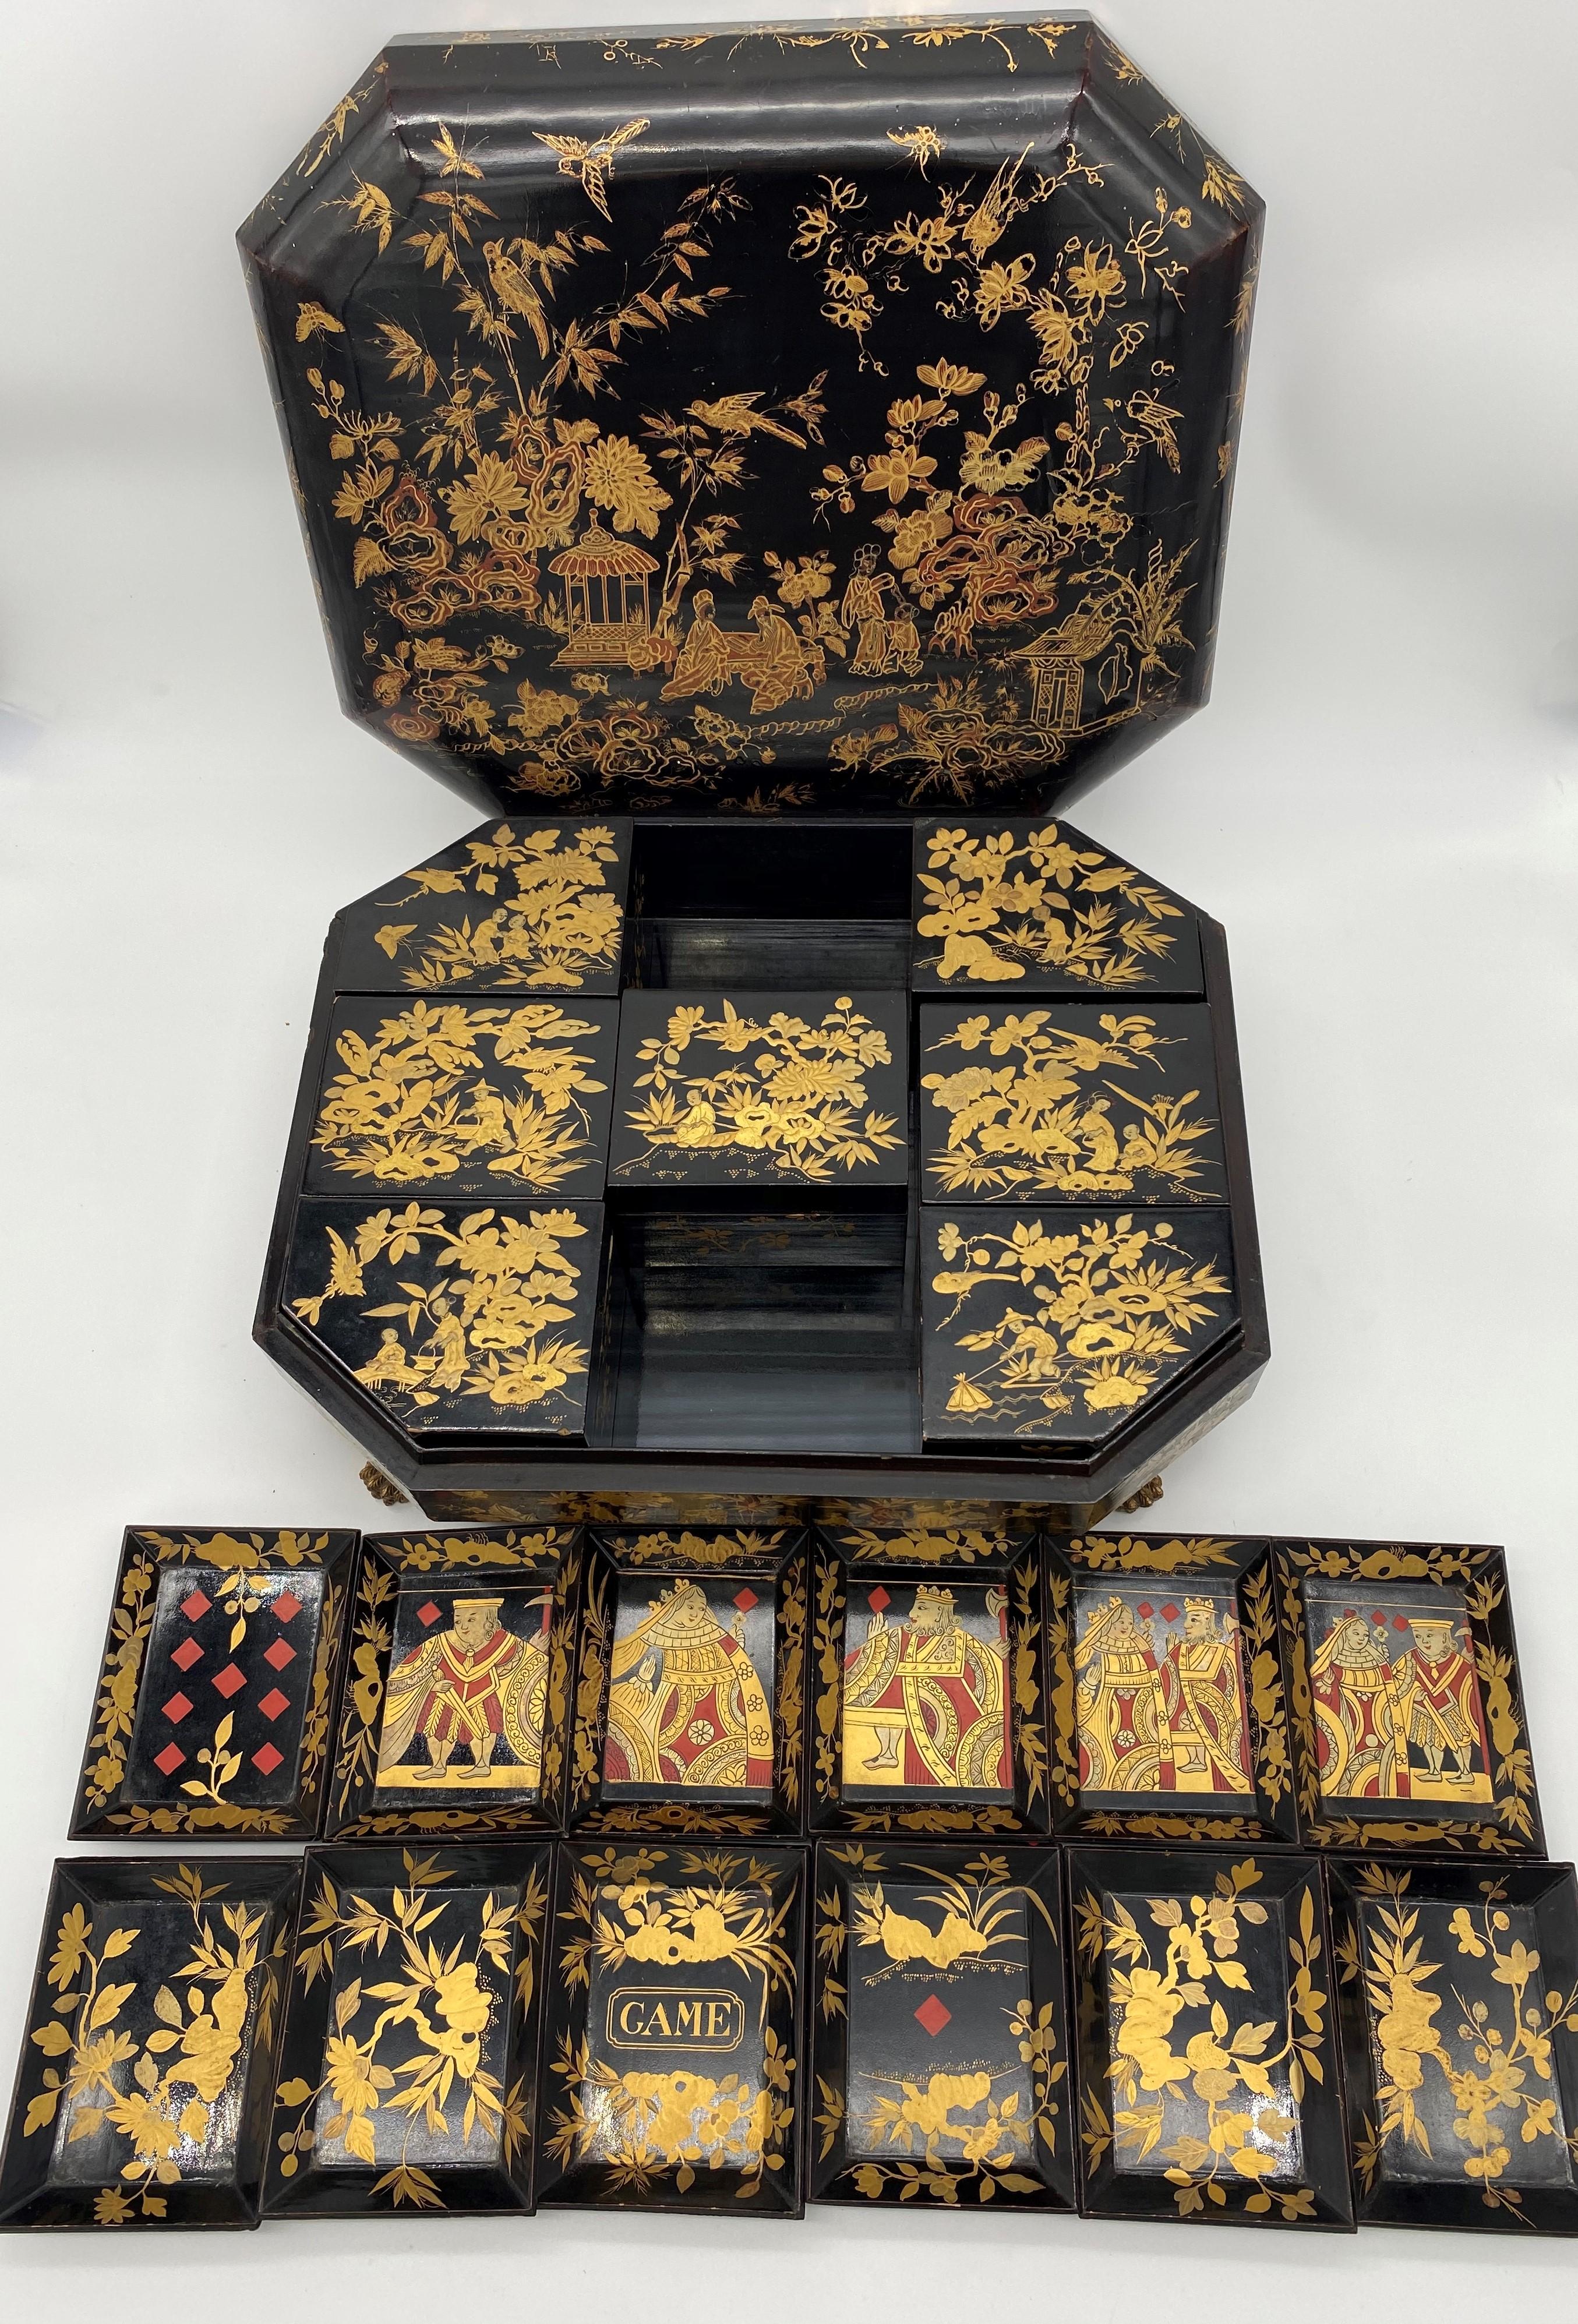 Antike 18. Jahrhundert Export chinesische Lack-Spiel-Box mit handgemalten Szenen vergoldet Export schwarzem Lack, gibt es 7 Spiel-Boxen und 12 Tabletts, Größe: 15inch x 12 x 4,5.